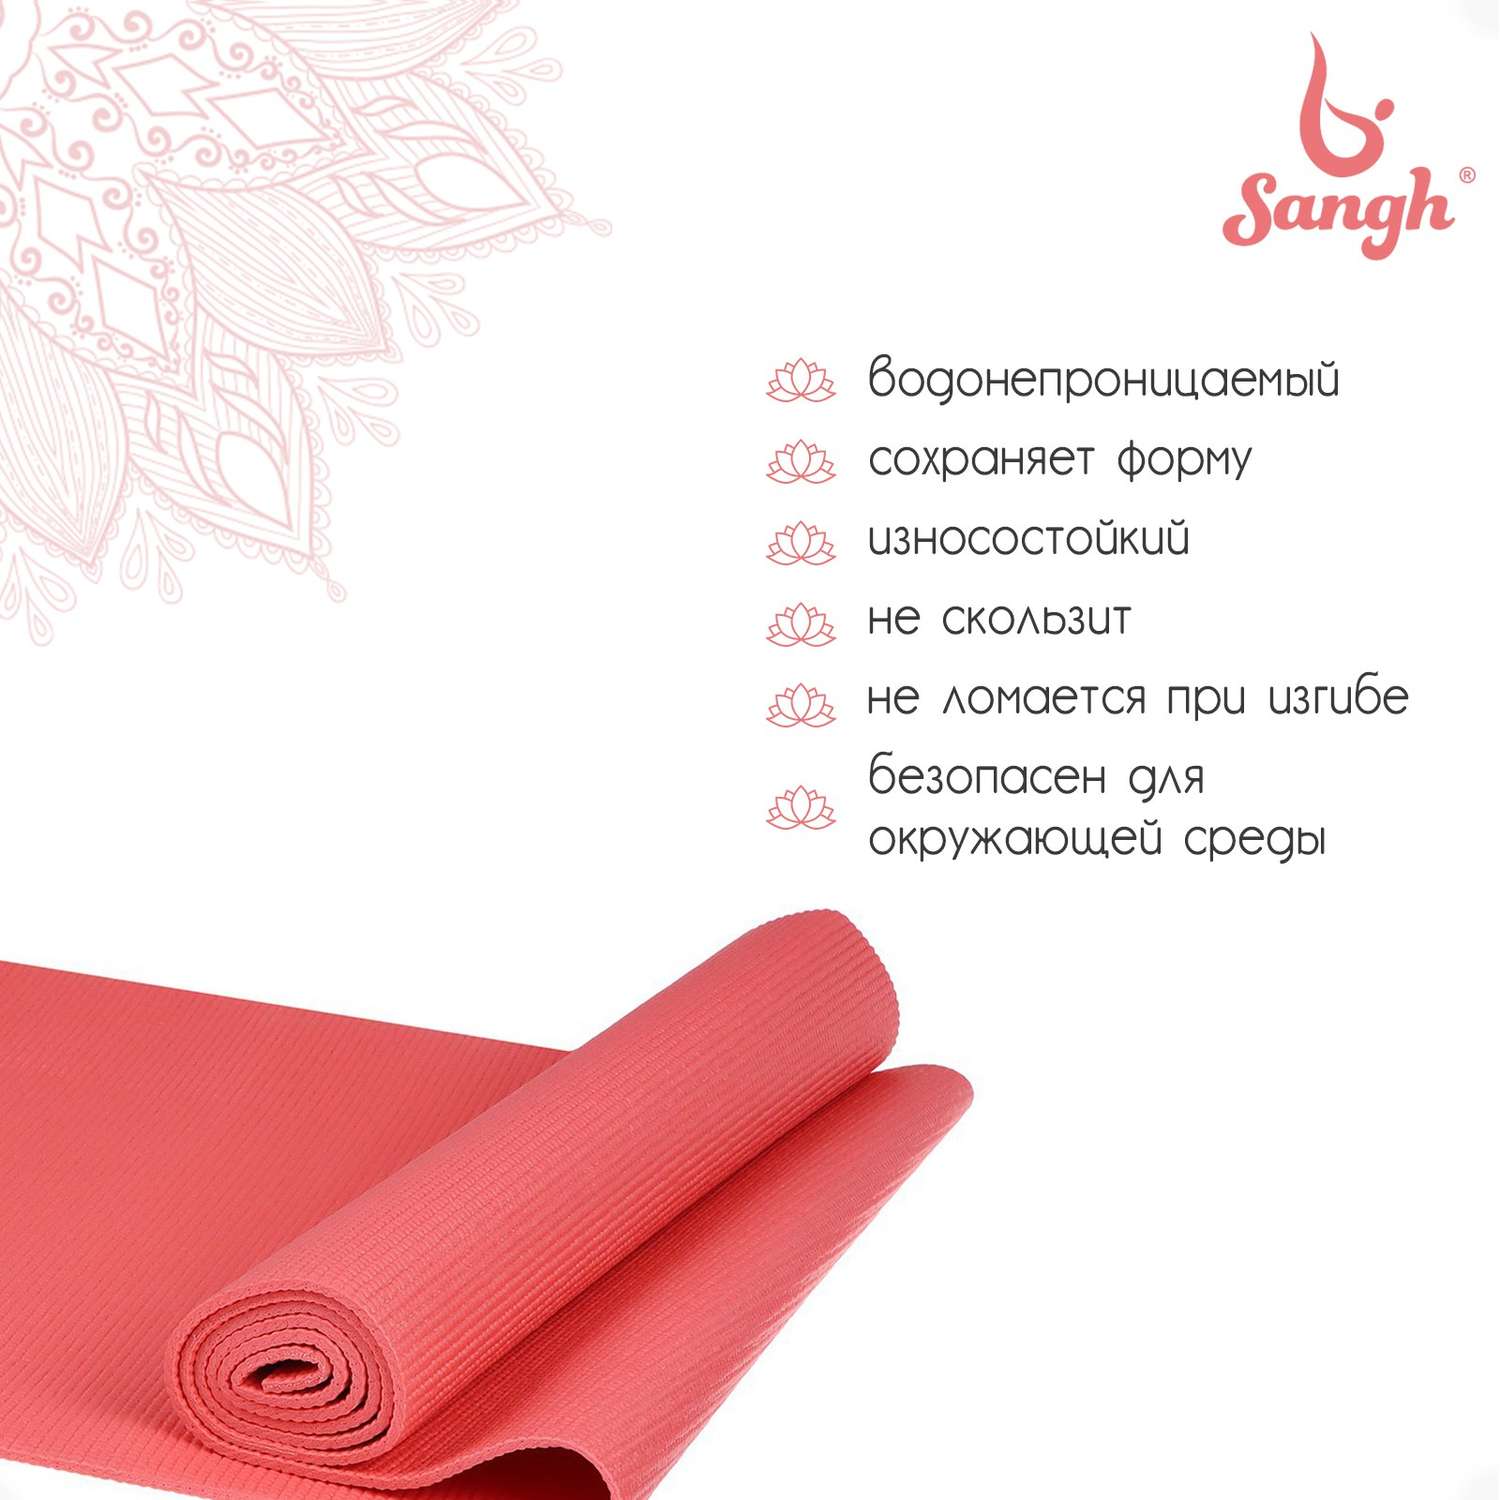 Коврик Sangh 173 × 61 × 0.5 см. цвет розовый - фото 2